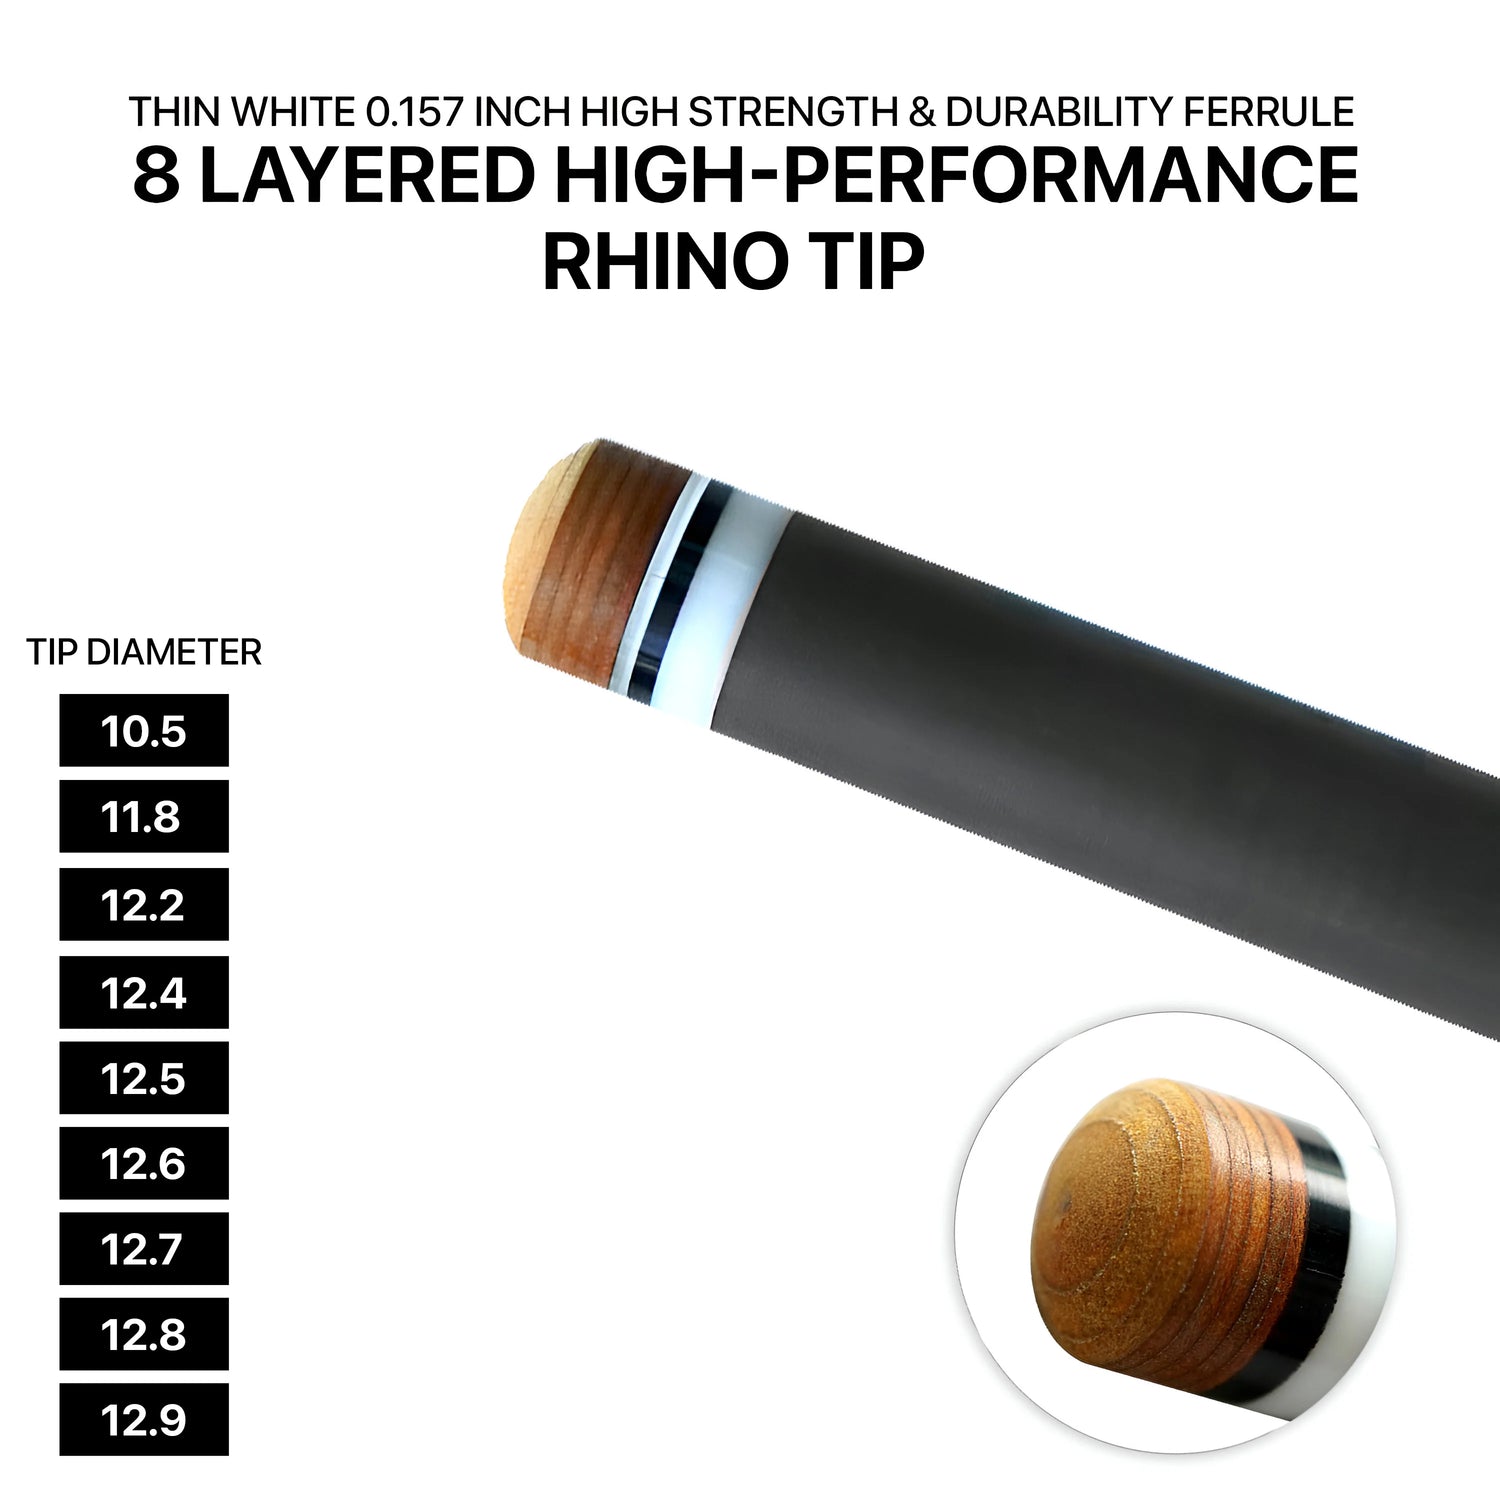 Rhino - 710mm (28'') / VP2 Carbon Carom Single Shaft 12mm